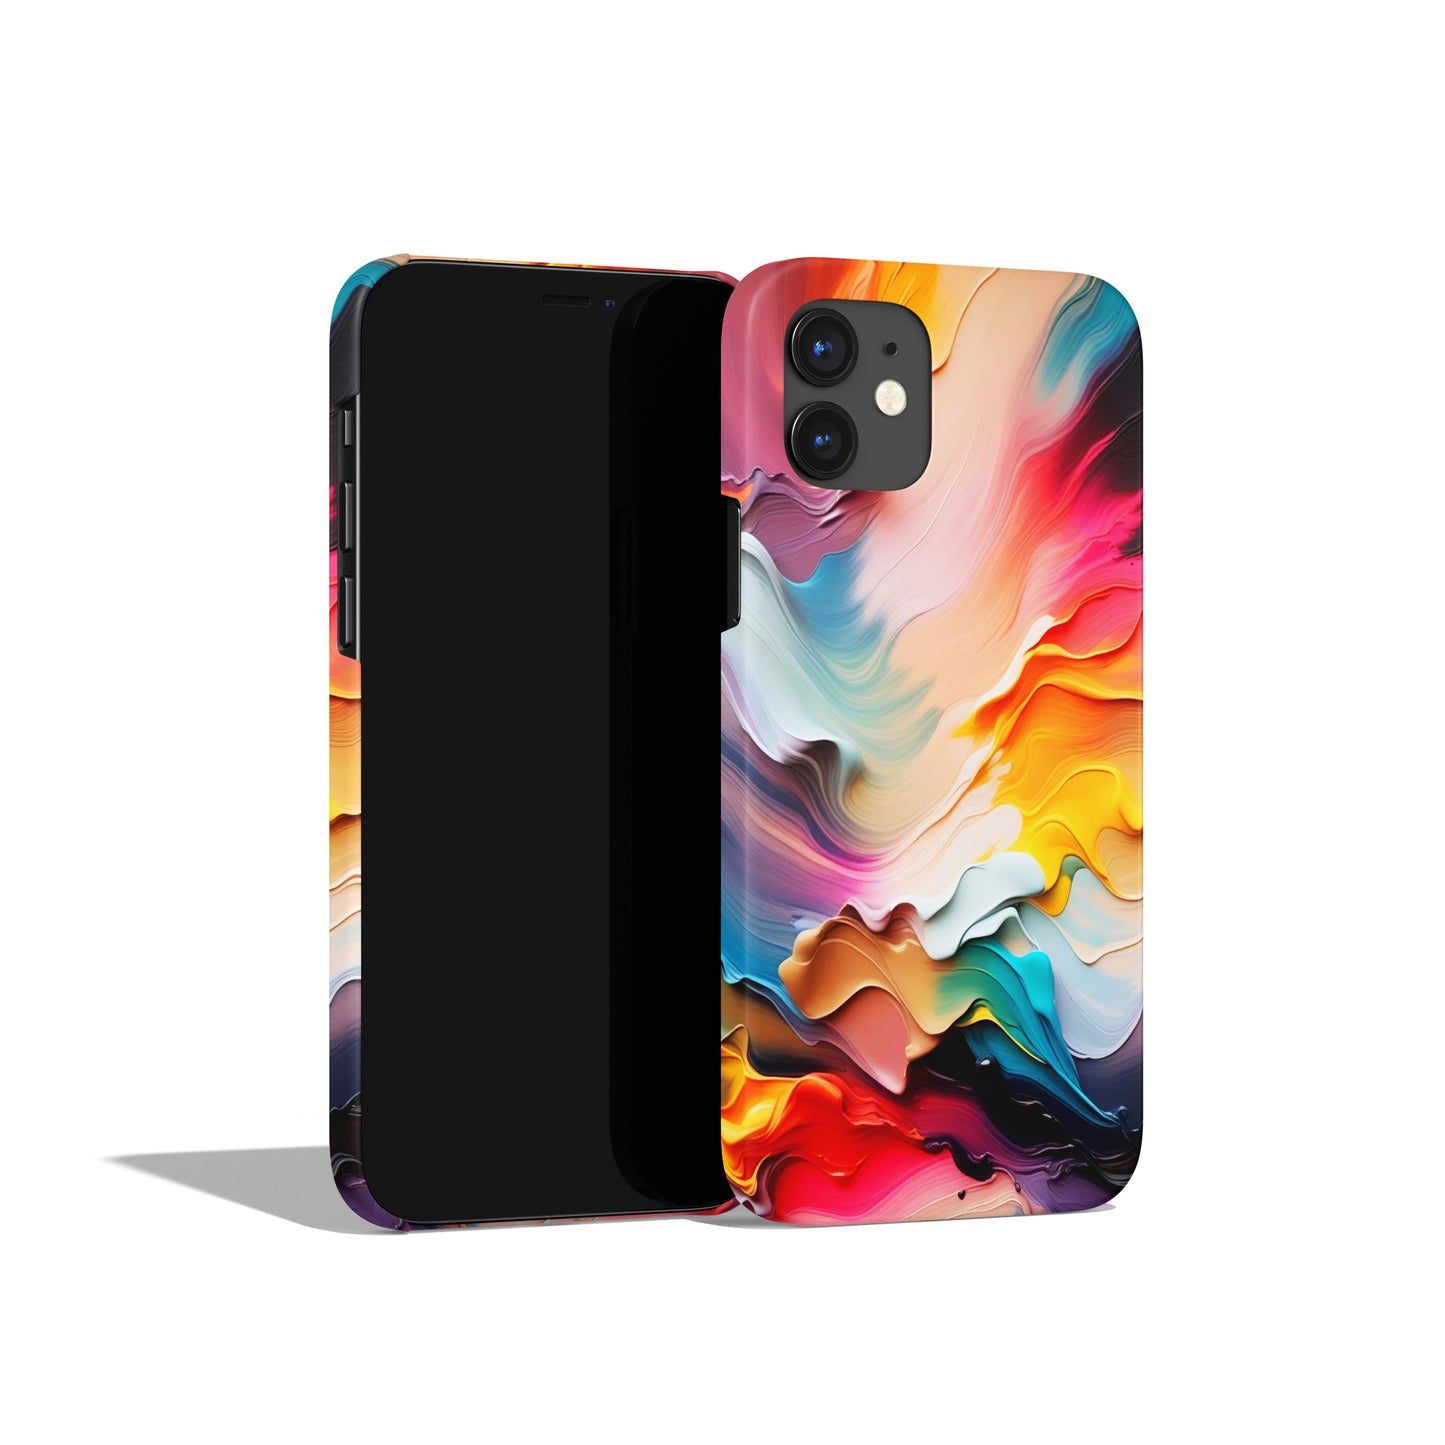 Vibrant Colors iPhone Case